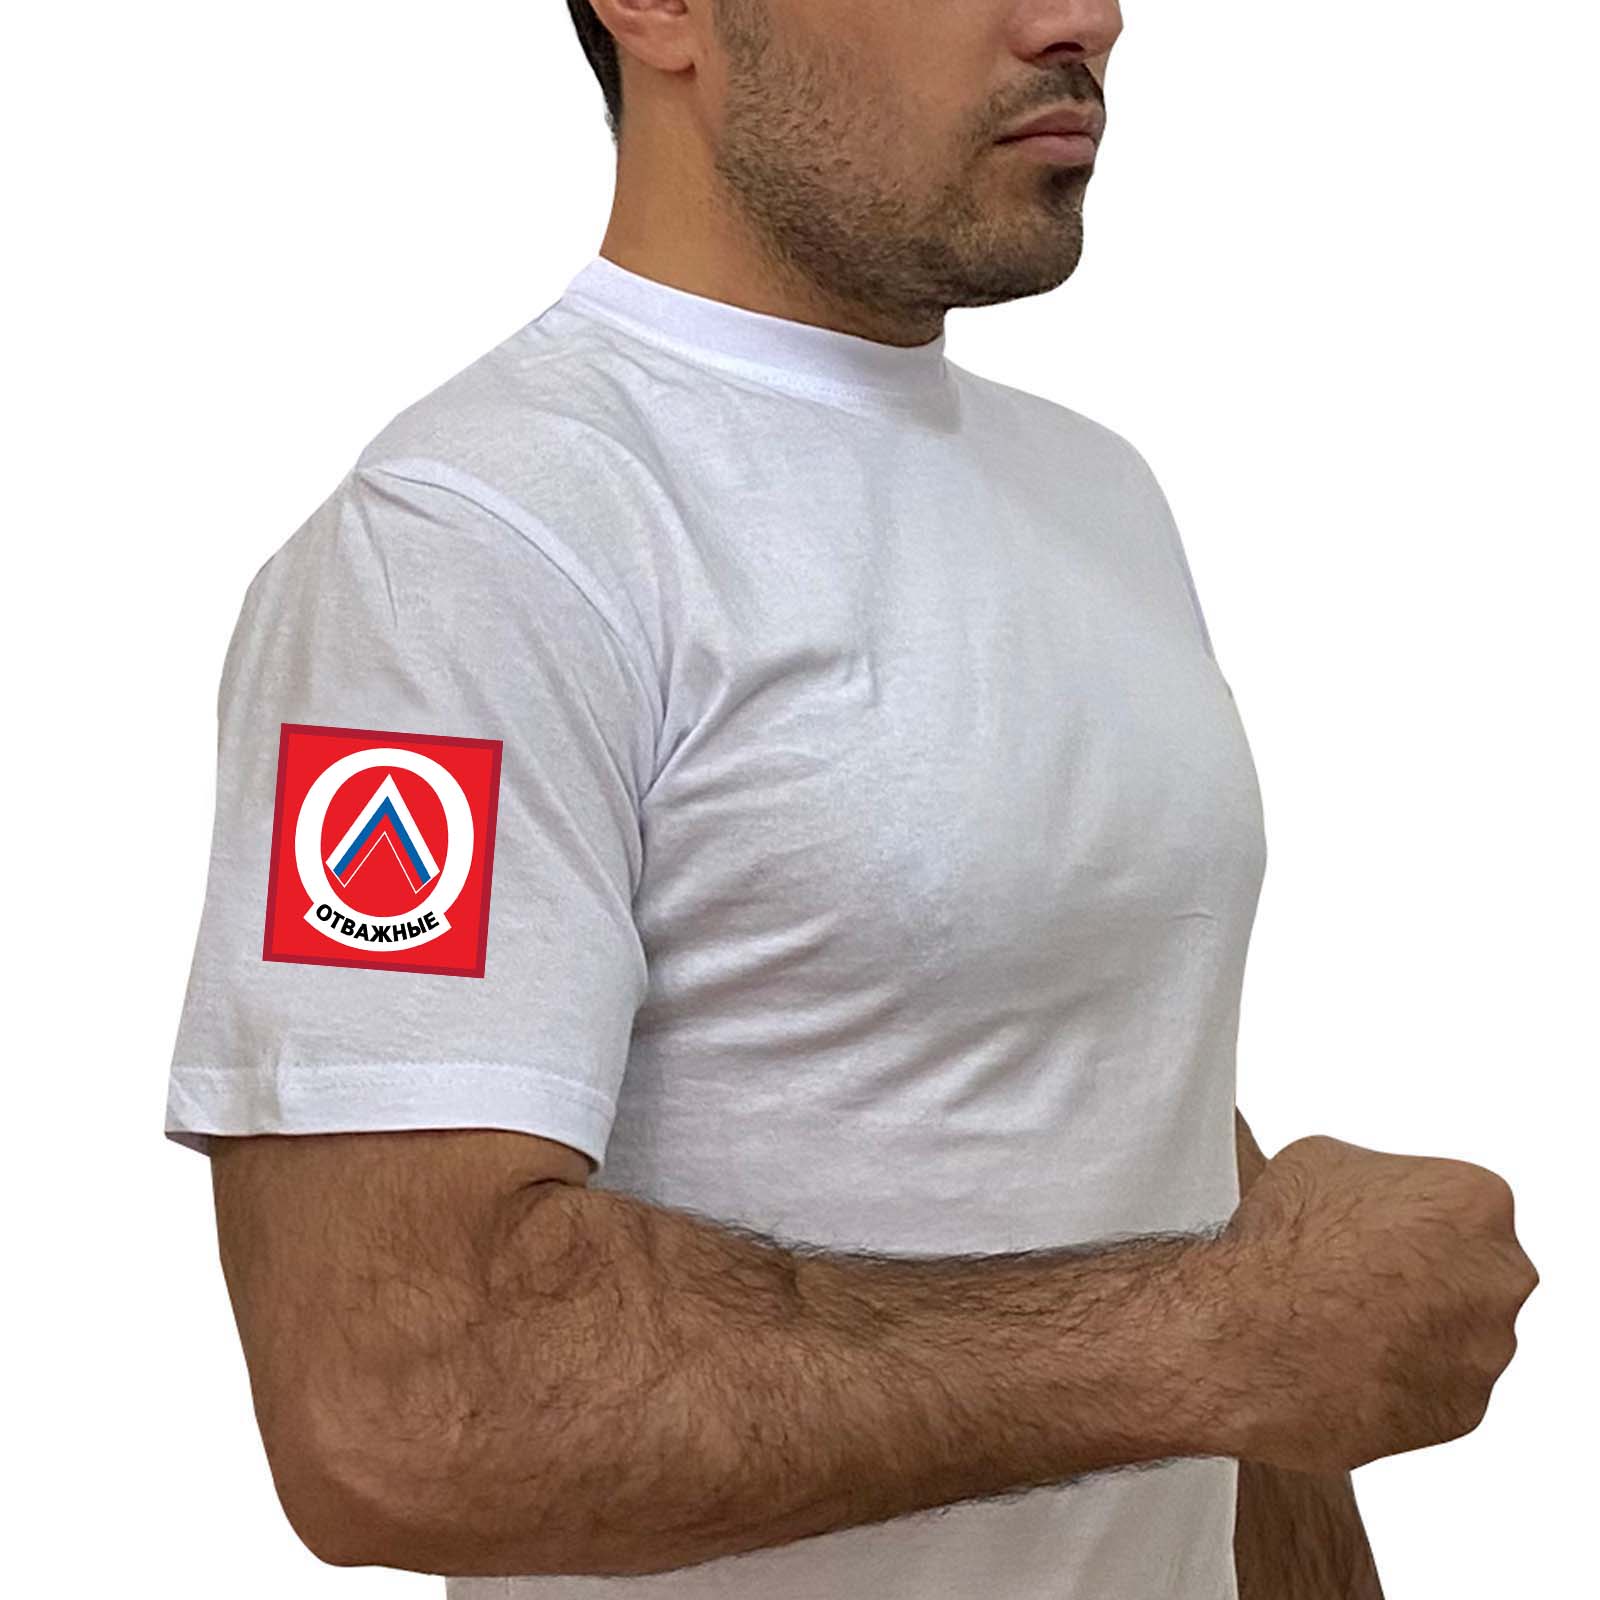 Купить белую футболку "Отважные" с трансфером на рукаве